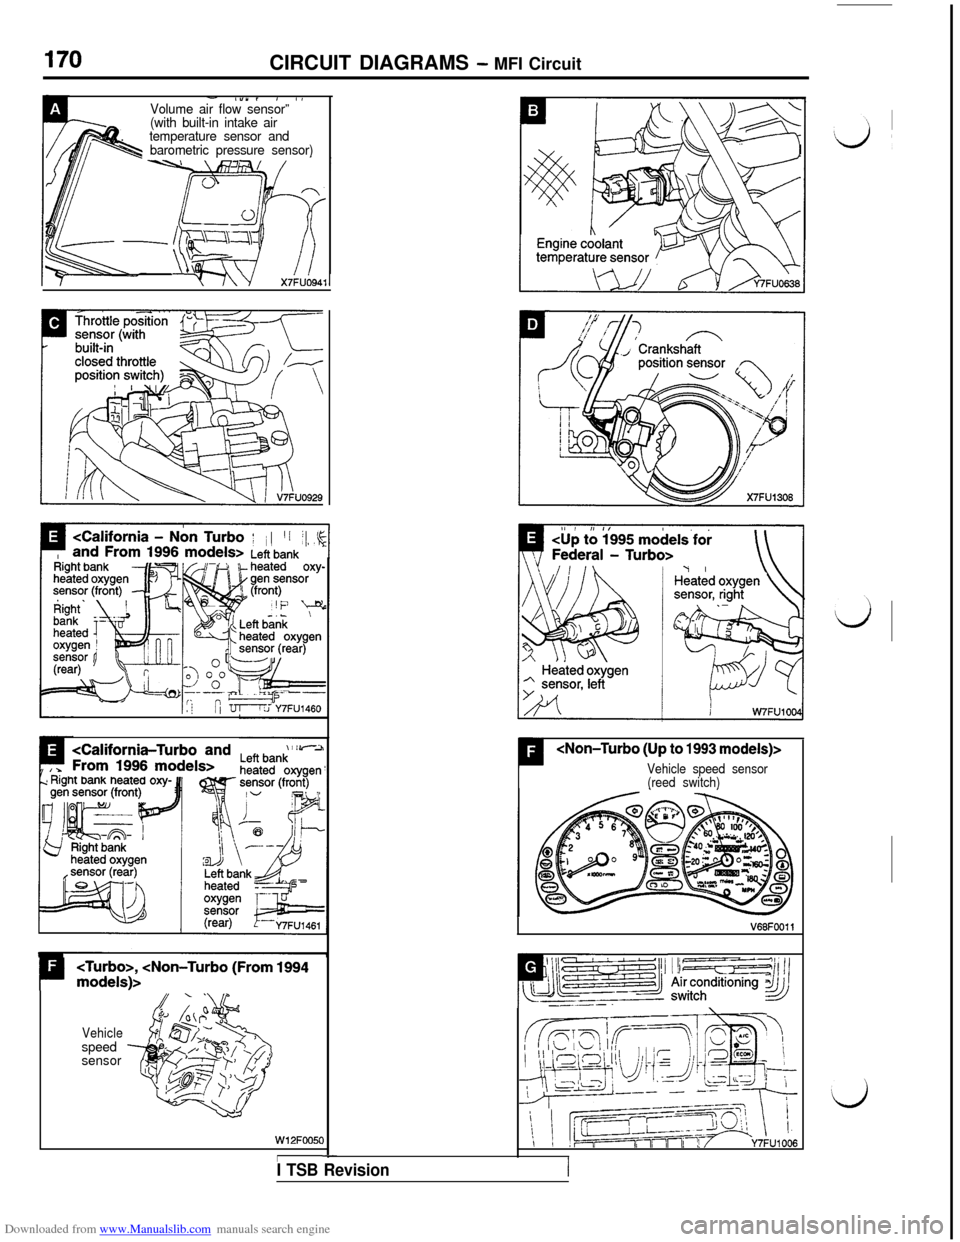 MITSUBISHI 3000GT 1995 2.G Workshop Manual Downloaded from www.Manualslib.com manuals search engine CIRCUIT DIAGRAMS - MFI Circuit
- l”“, , IVolume air flow sensor”’.(with built-in intake air
temperature sensor and
barometric pressure 